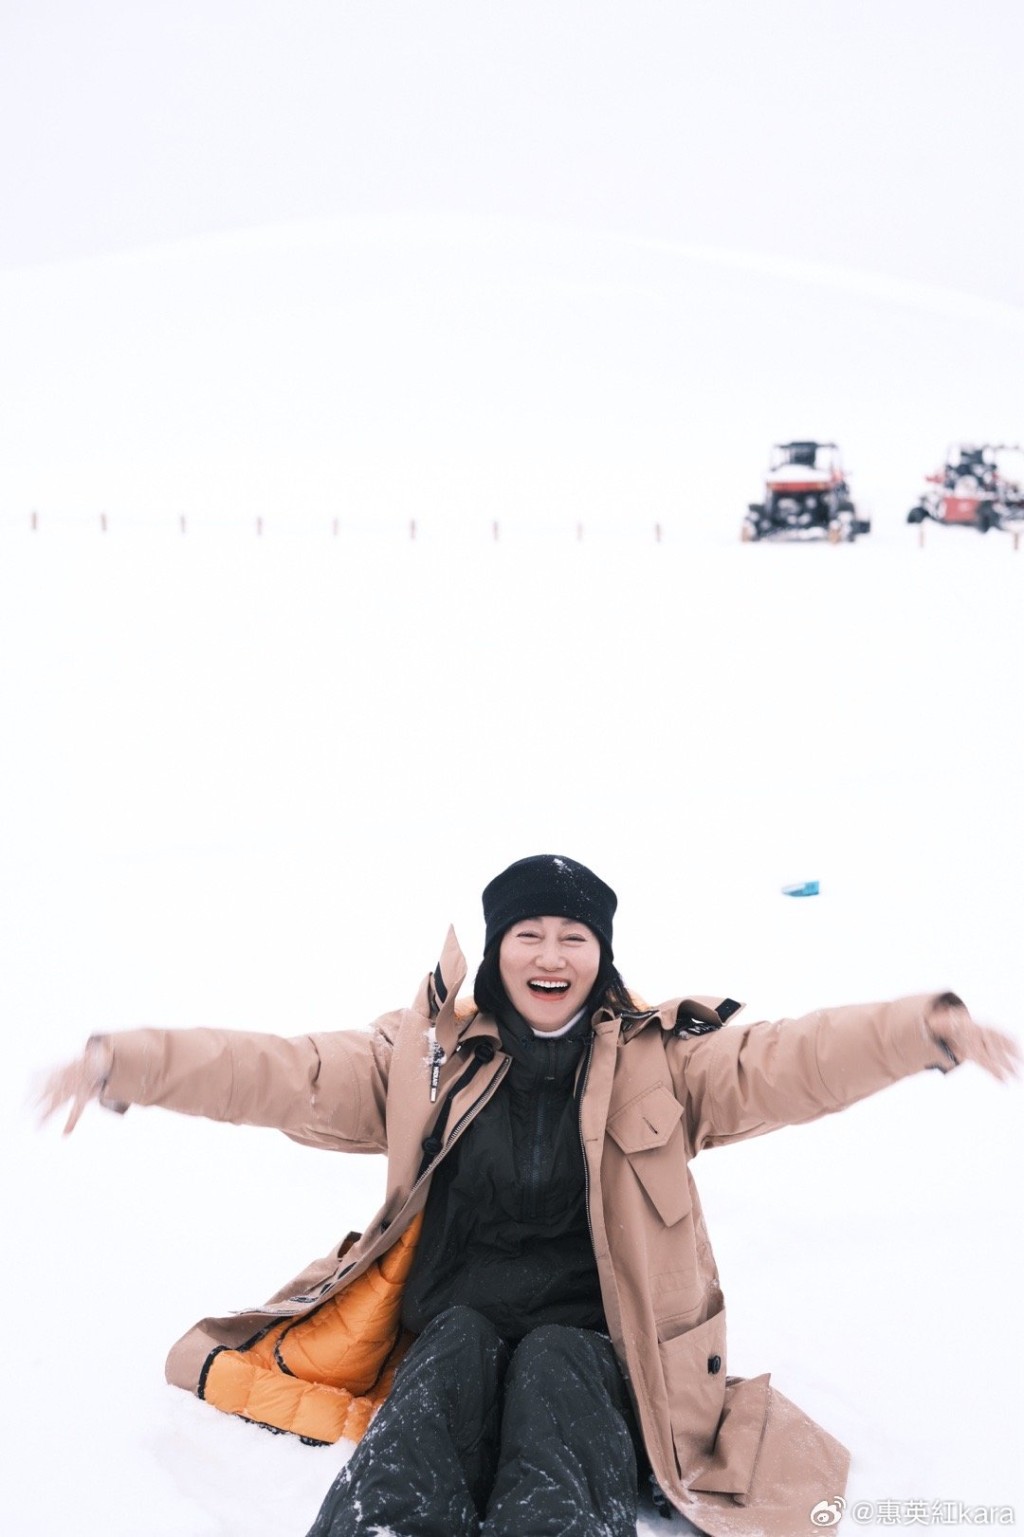 惠英紅似乎很喜歡玩雪。